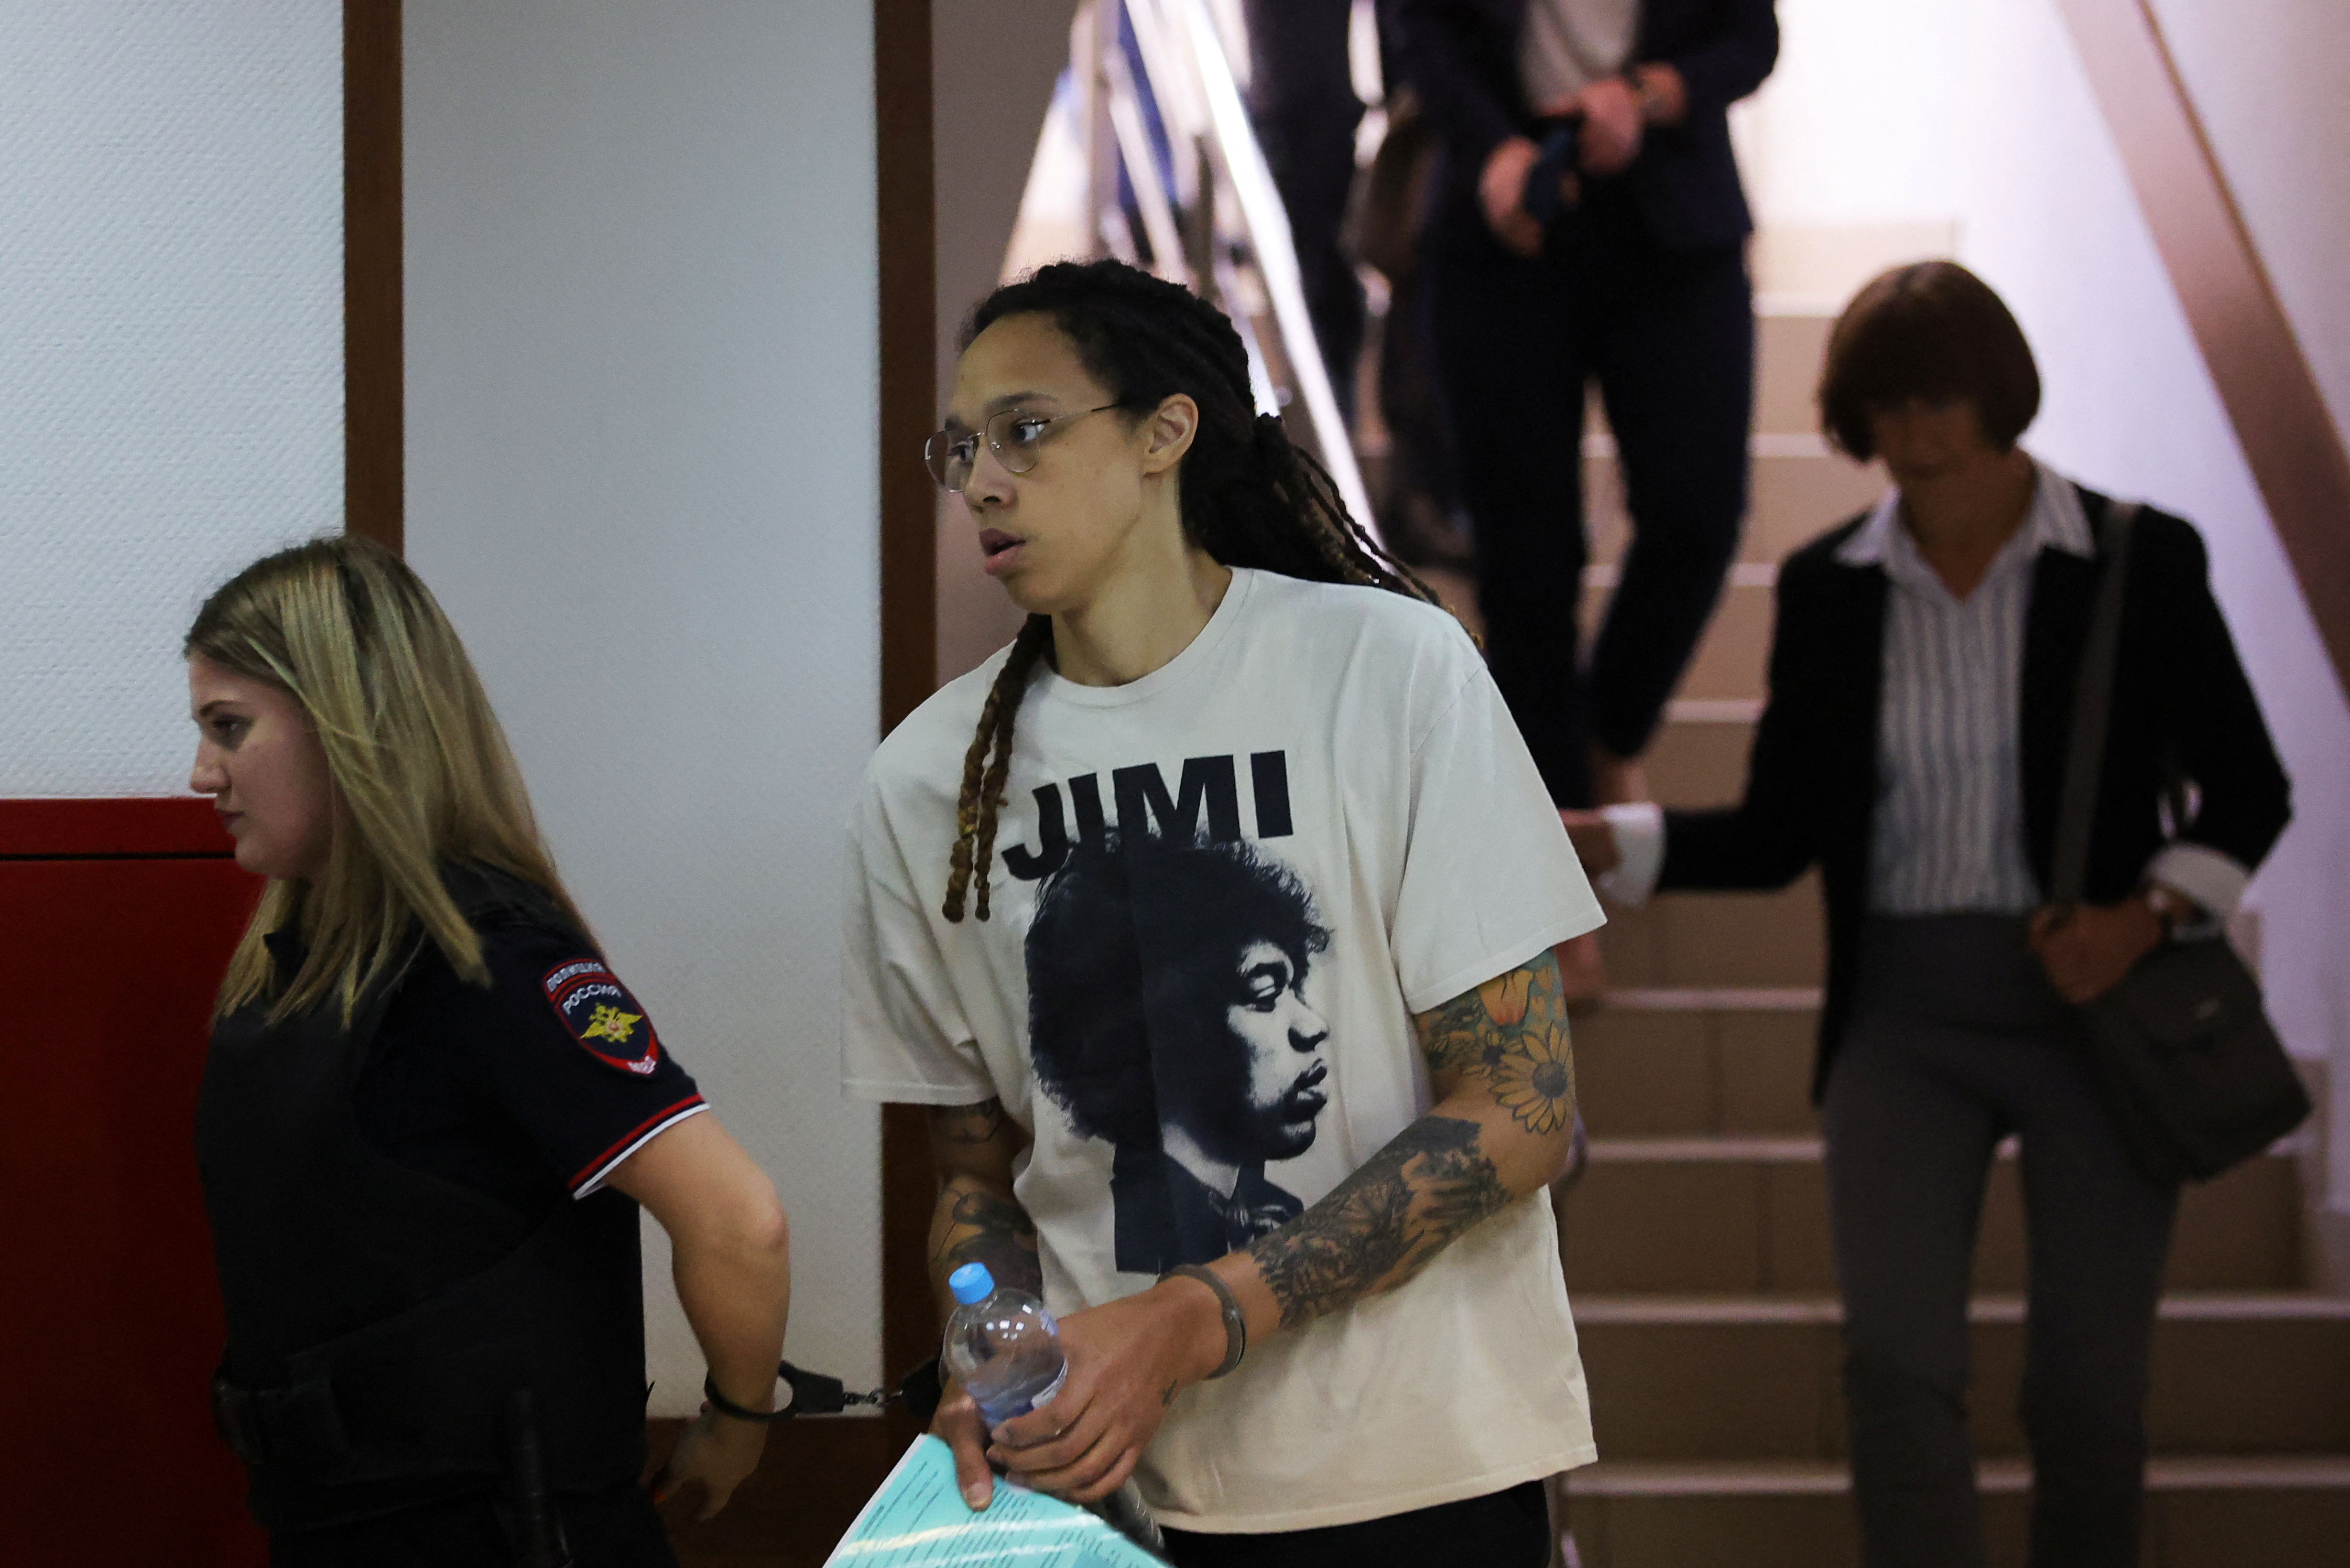 Comienza el juicio en Rusia contra la estrella del baloncesto estadounidense Brittney Griner, en prisión preventiva desde febrero